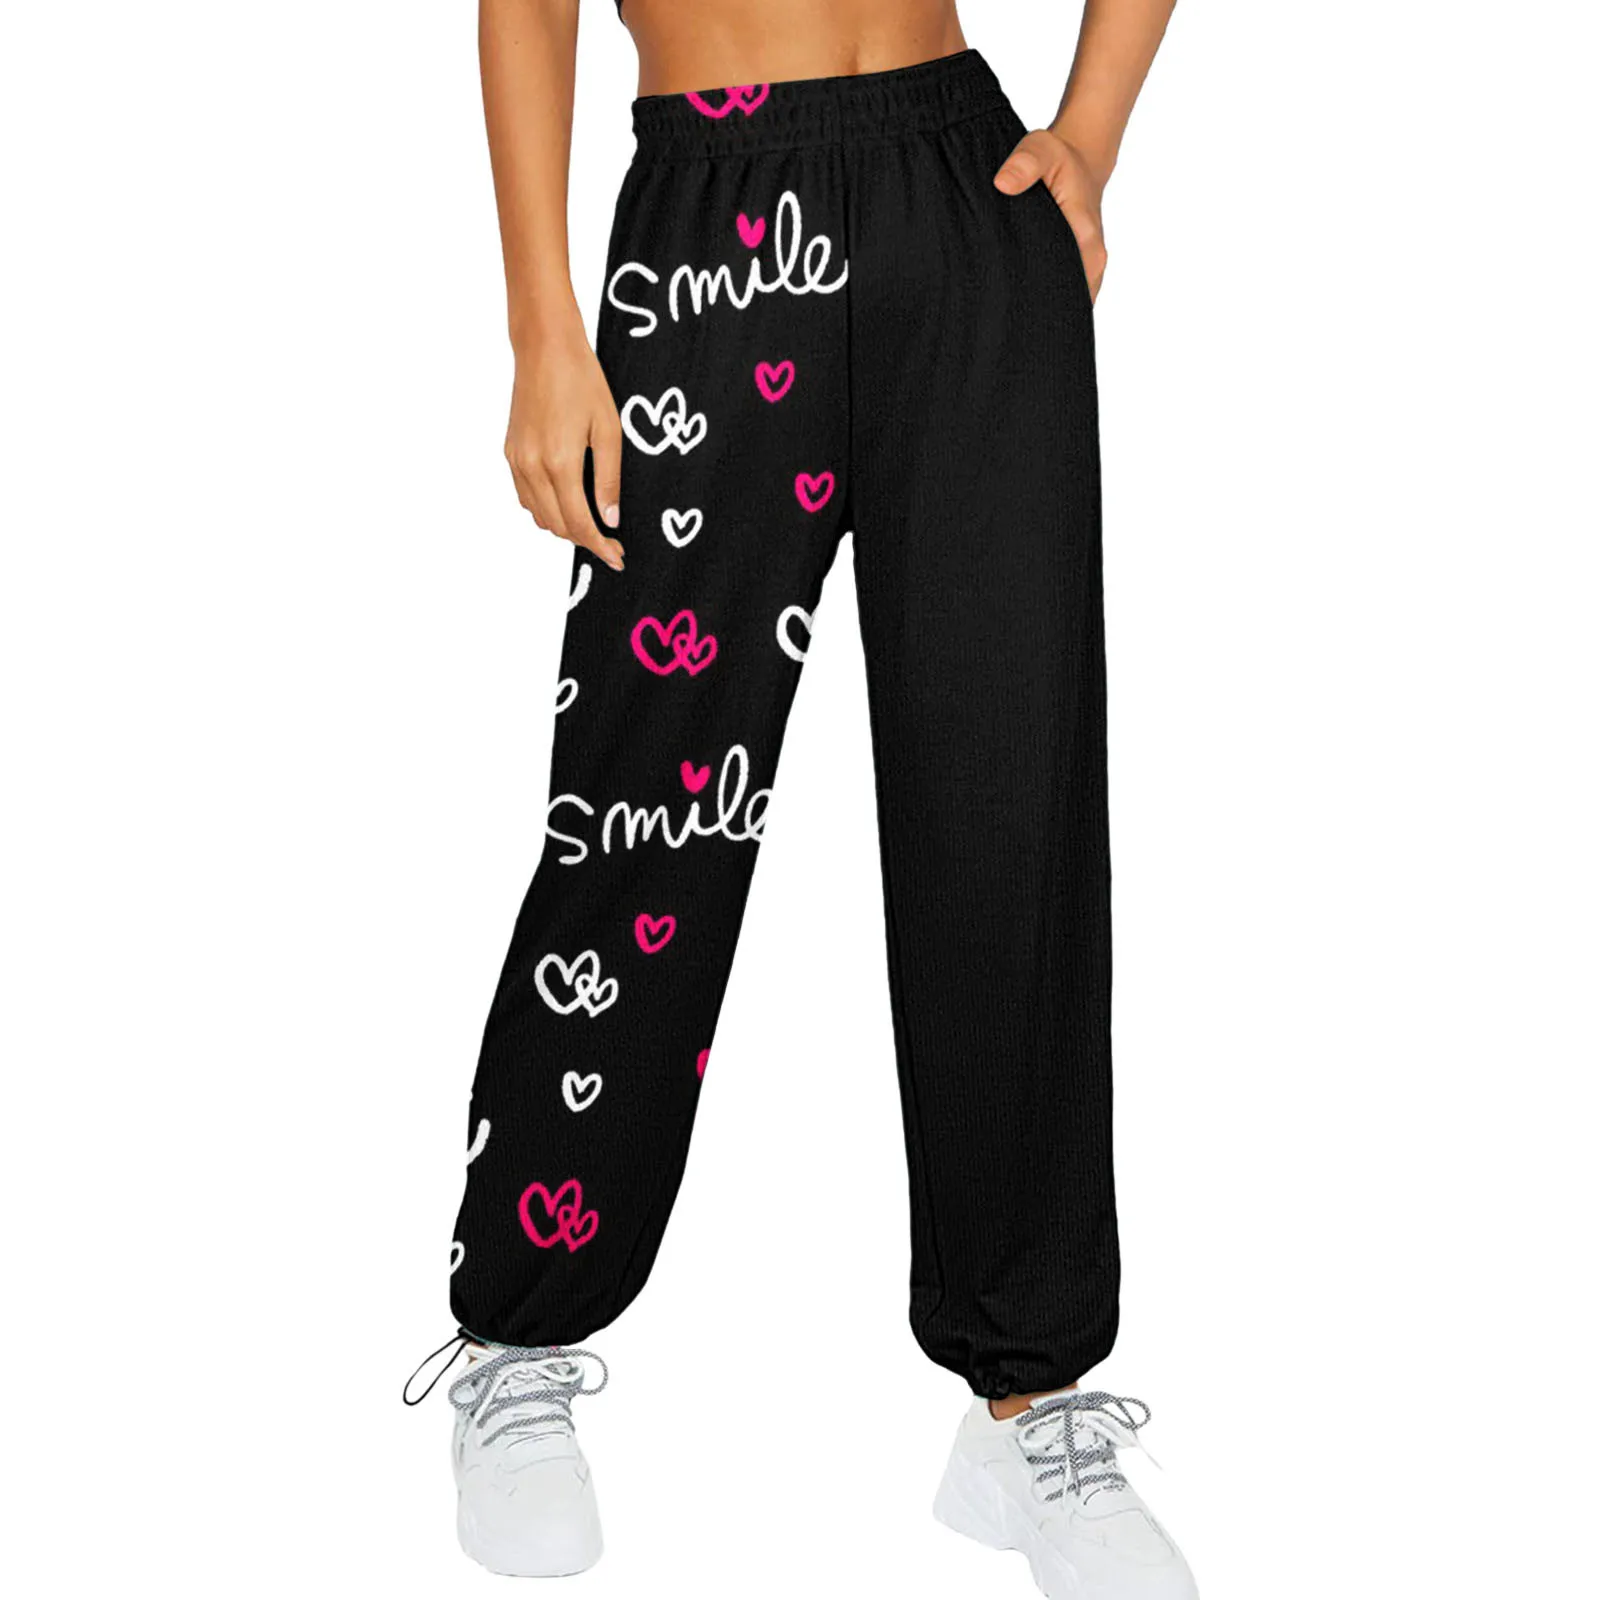 Женские спортивные брюки с графическим рисунком уличная одежда в стиле